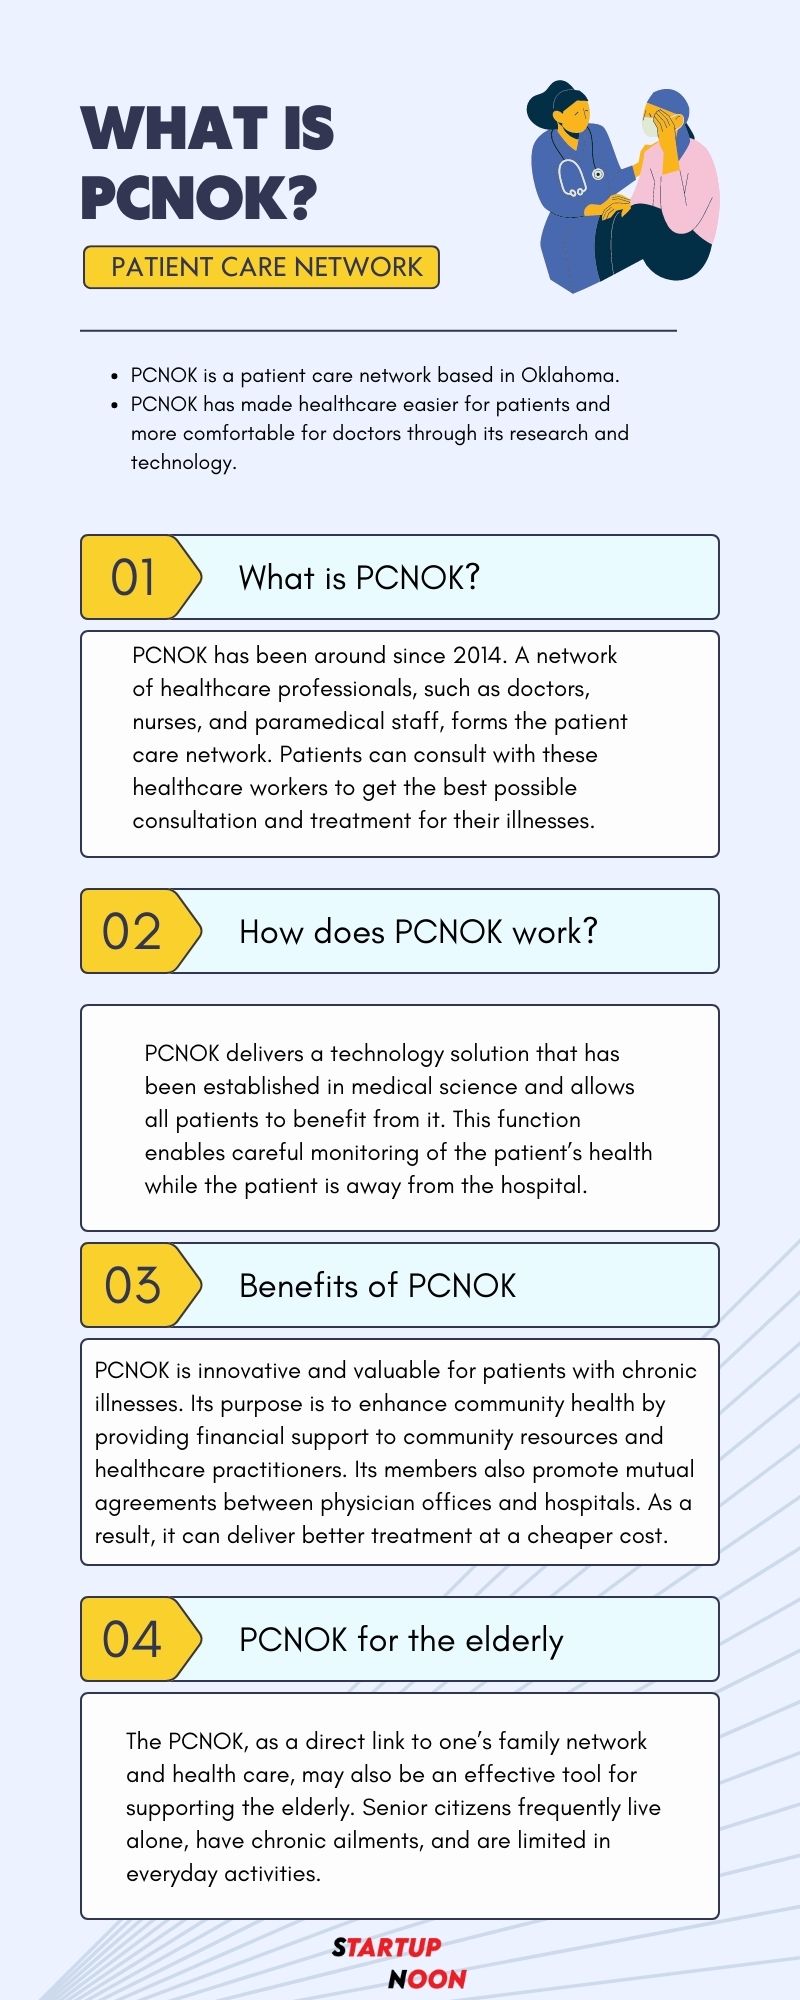 PCNOK Infographic Image